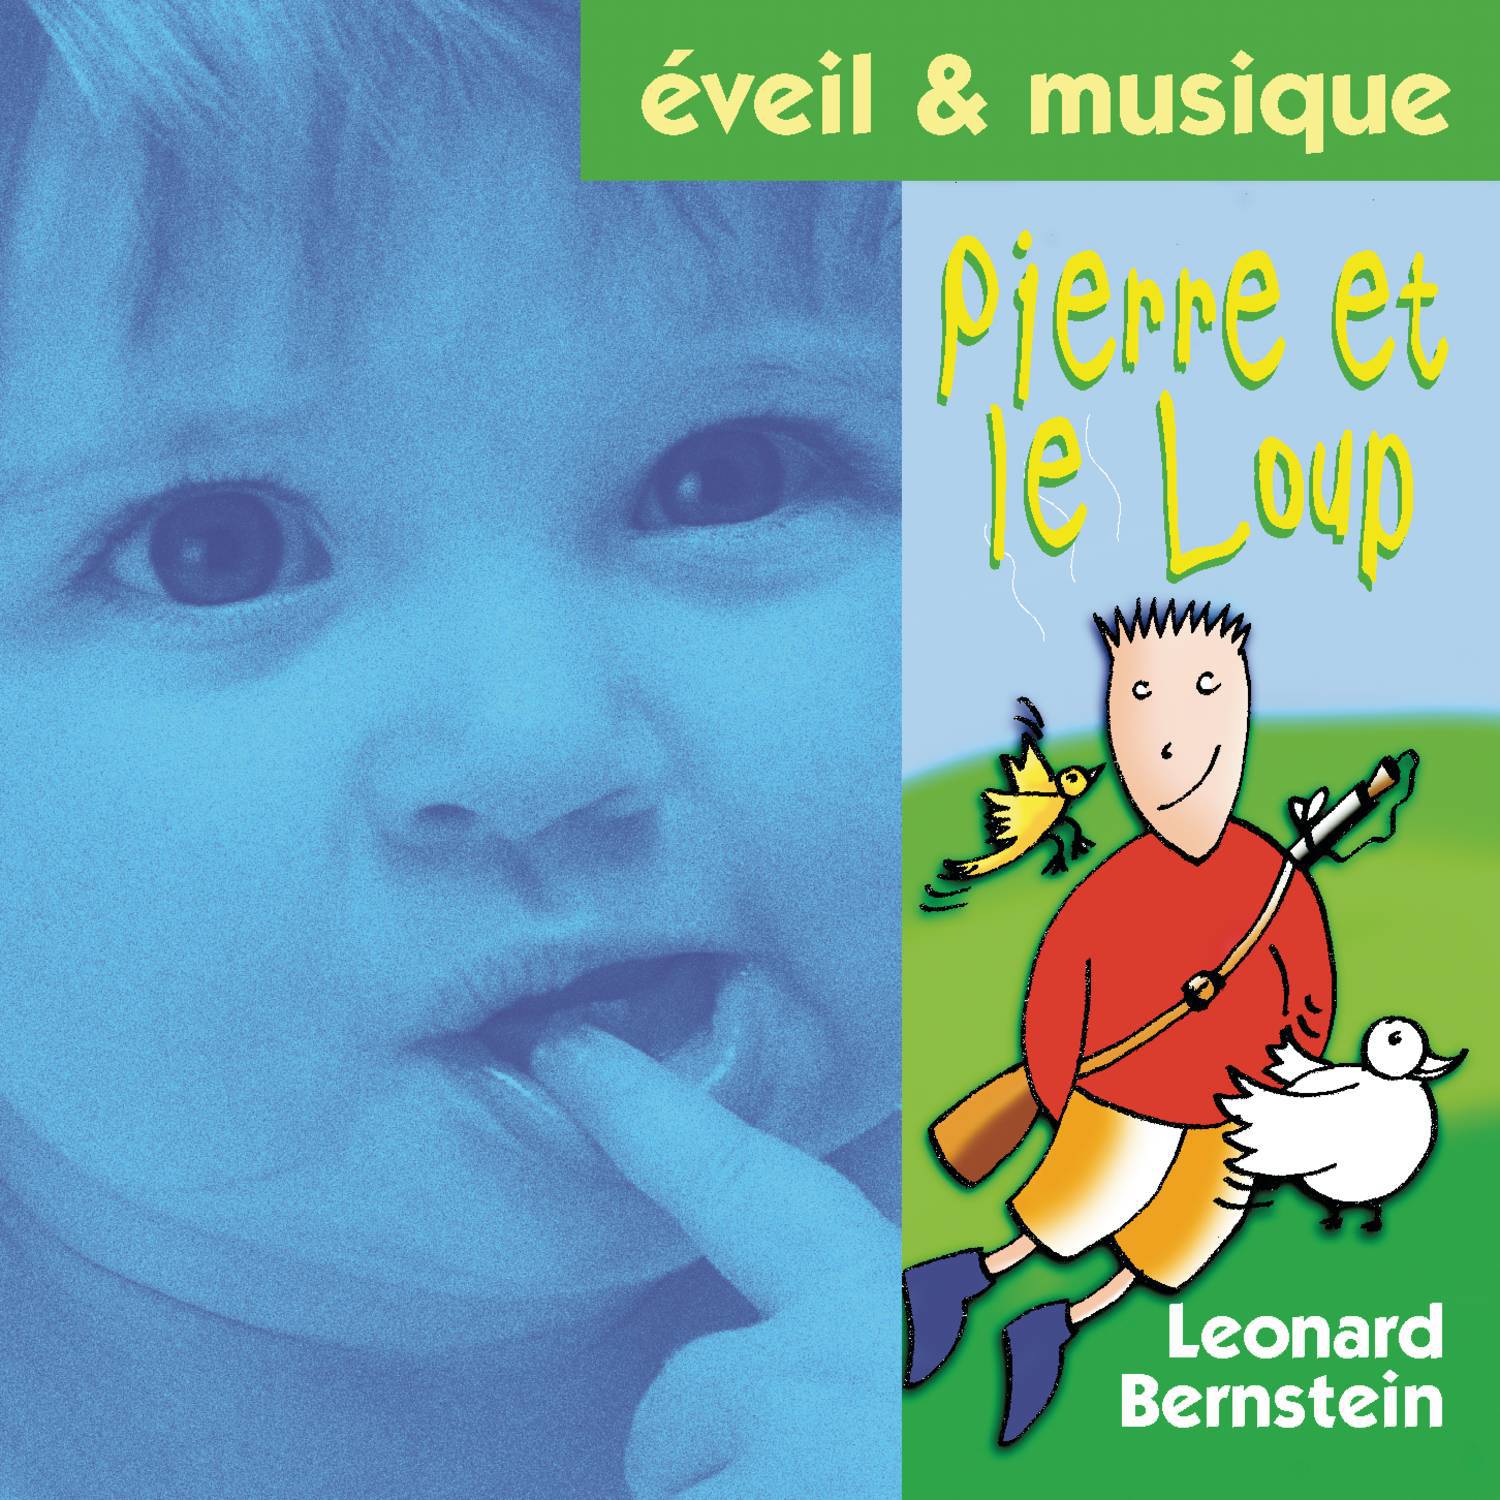 Pierre et le loup专辑